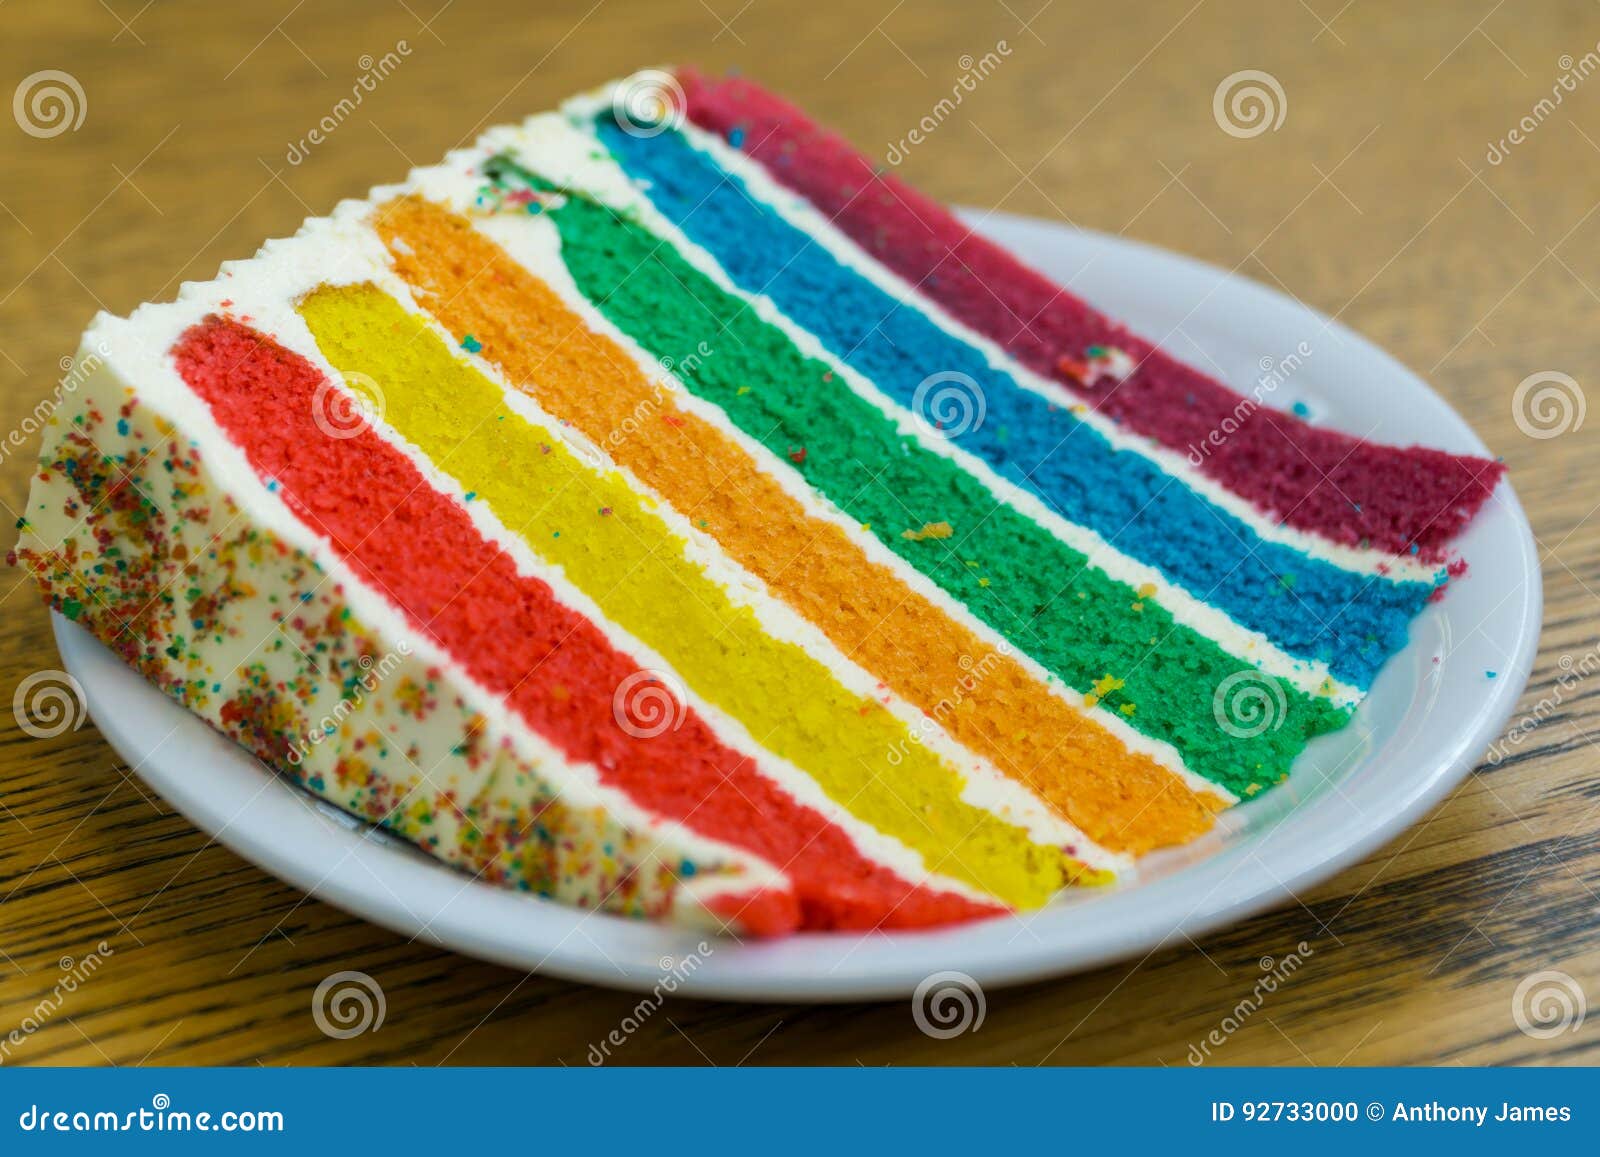 Tęcza tort z czerwienią, kolor żółty, pomarańcze, zieleń, błękit, purpurowa gąbka oddzielająca z świeżą śmietanką nakrywającą z tęczy miksturą, barwiony cukier